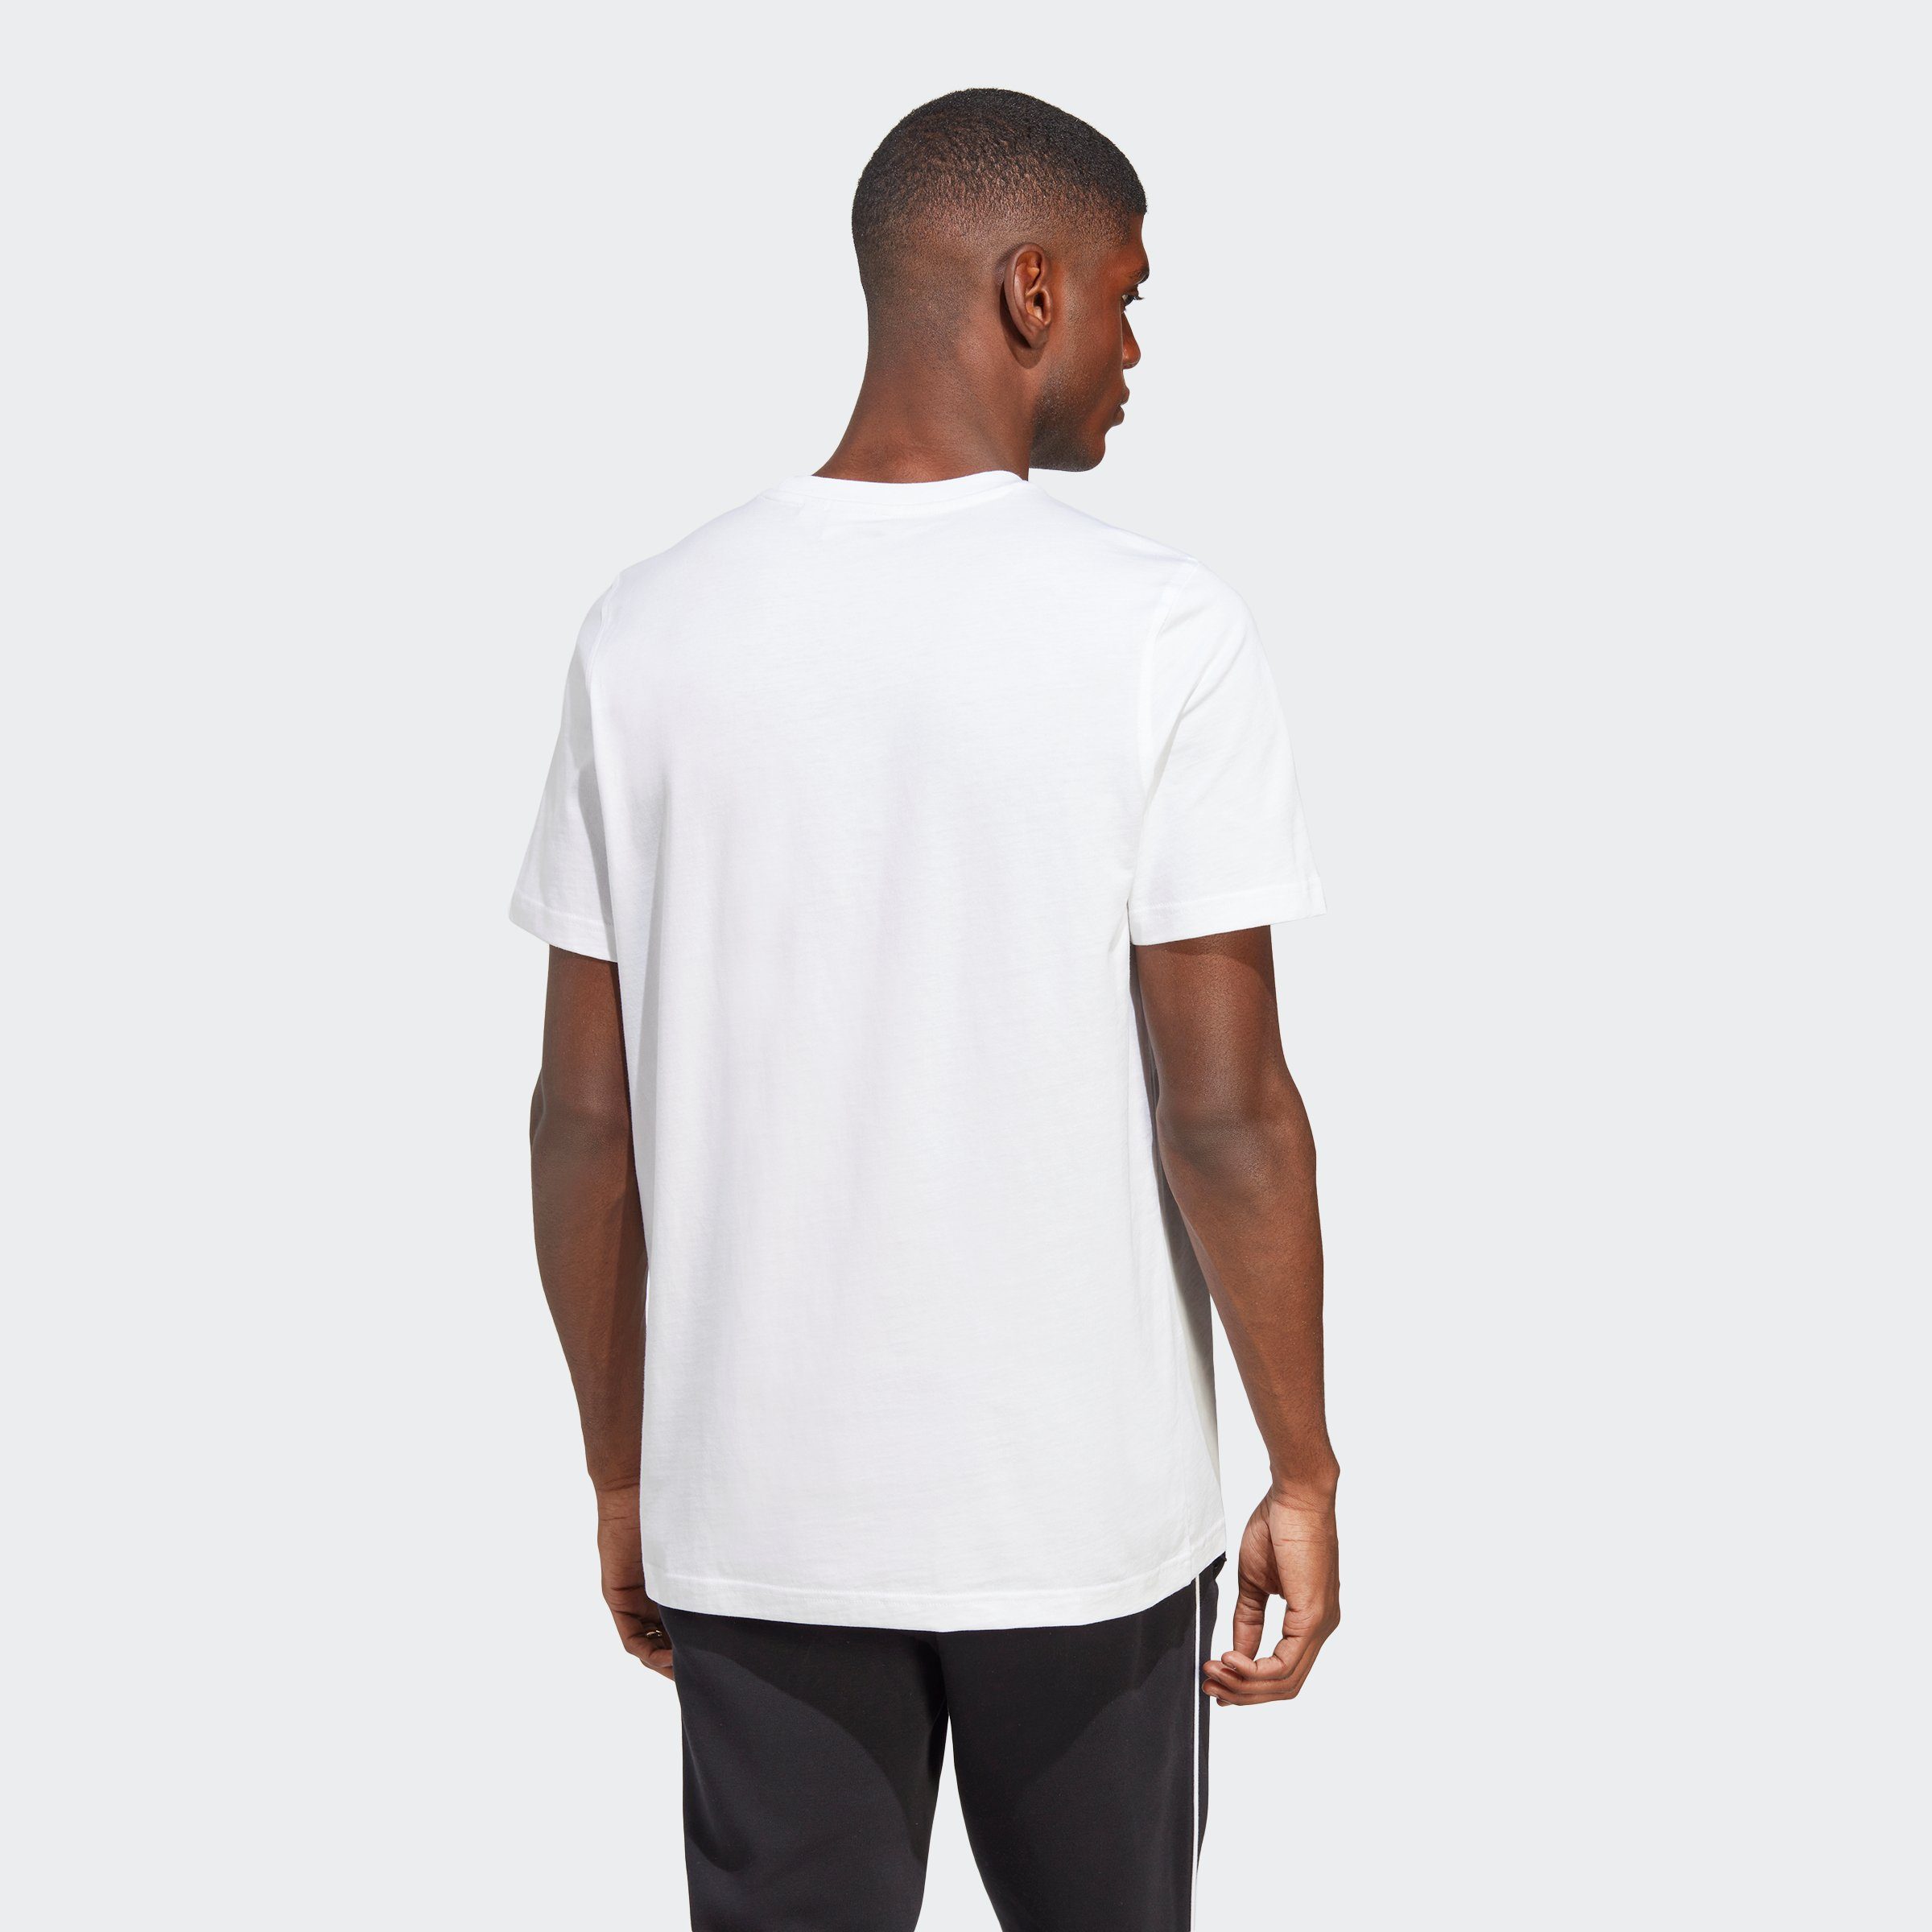 White TREFOIL adidas CLASSICS T-Shirt Black ADICOLOR / Originals